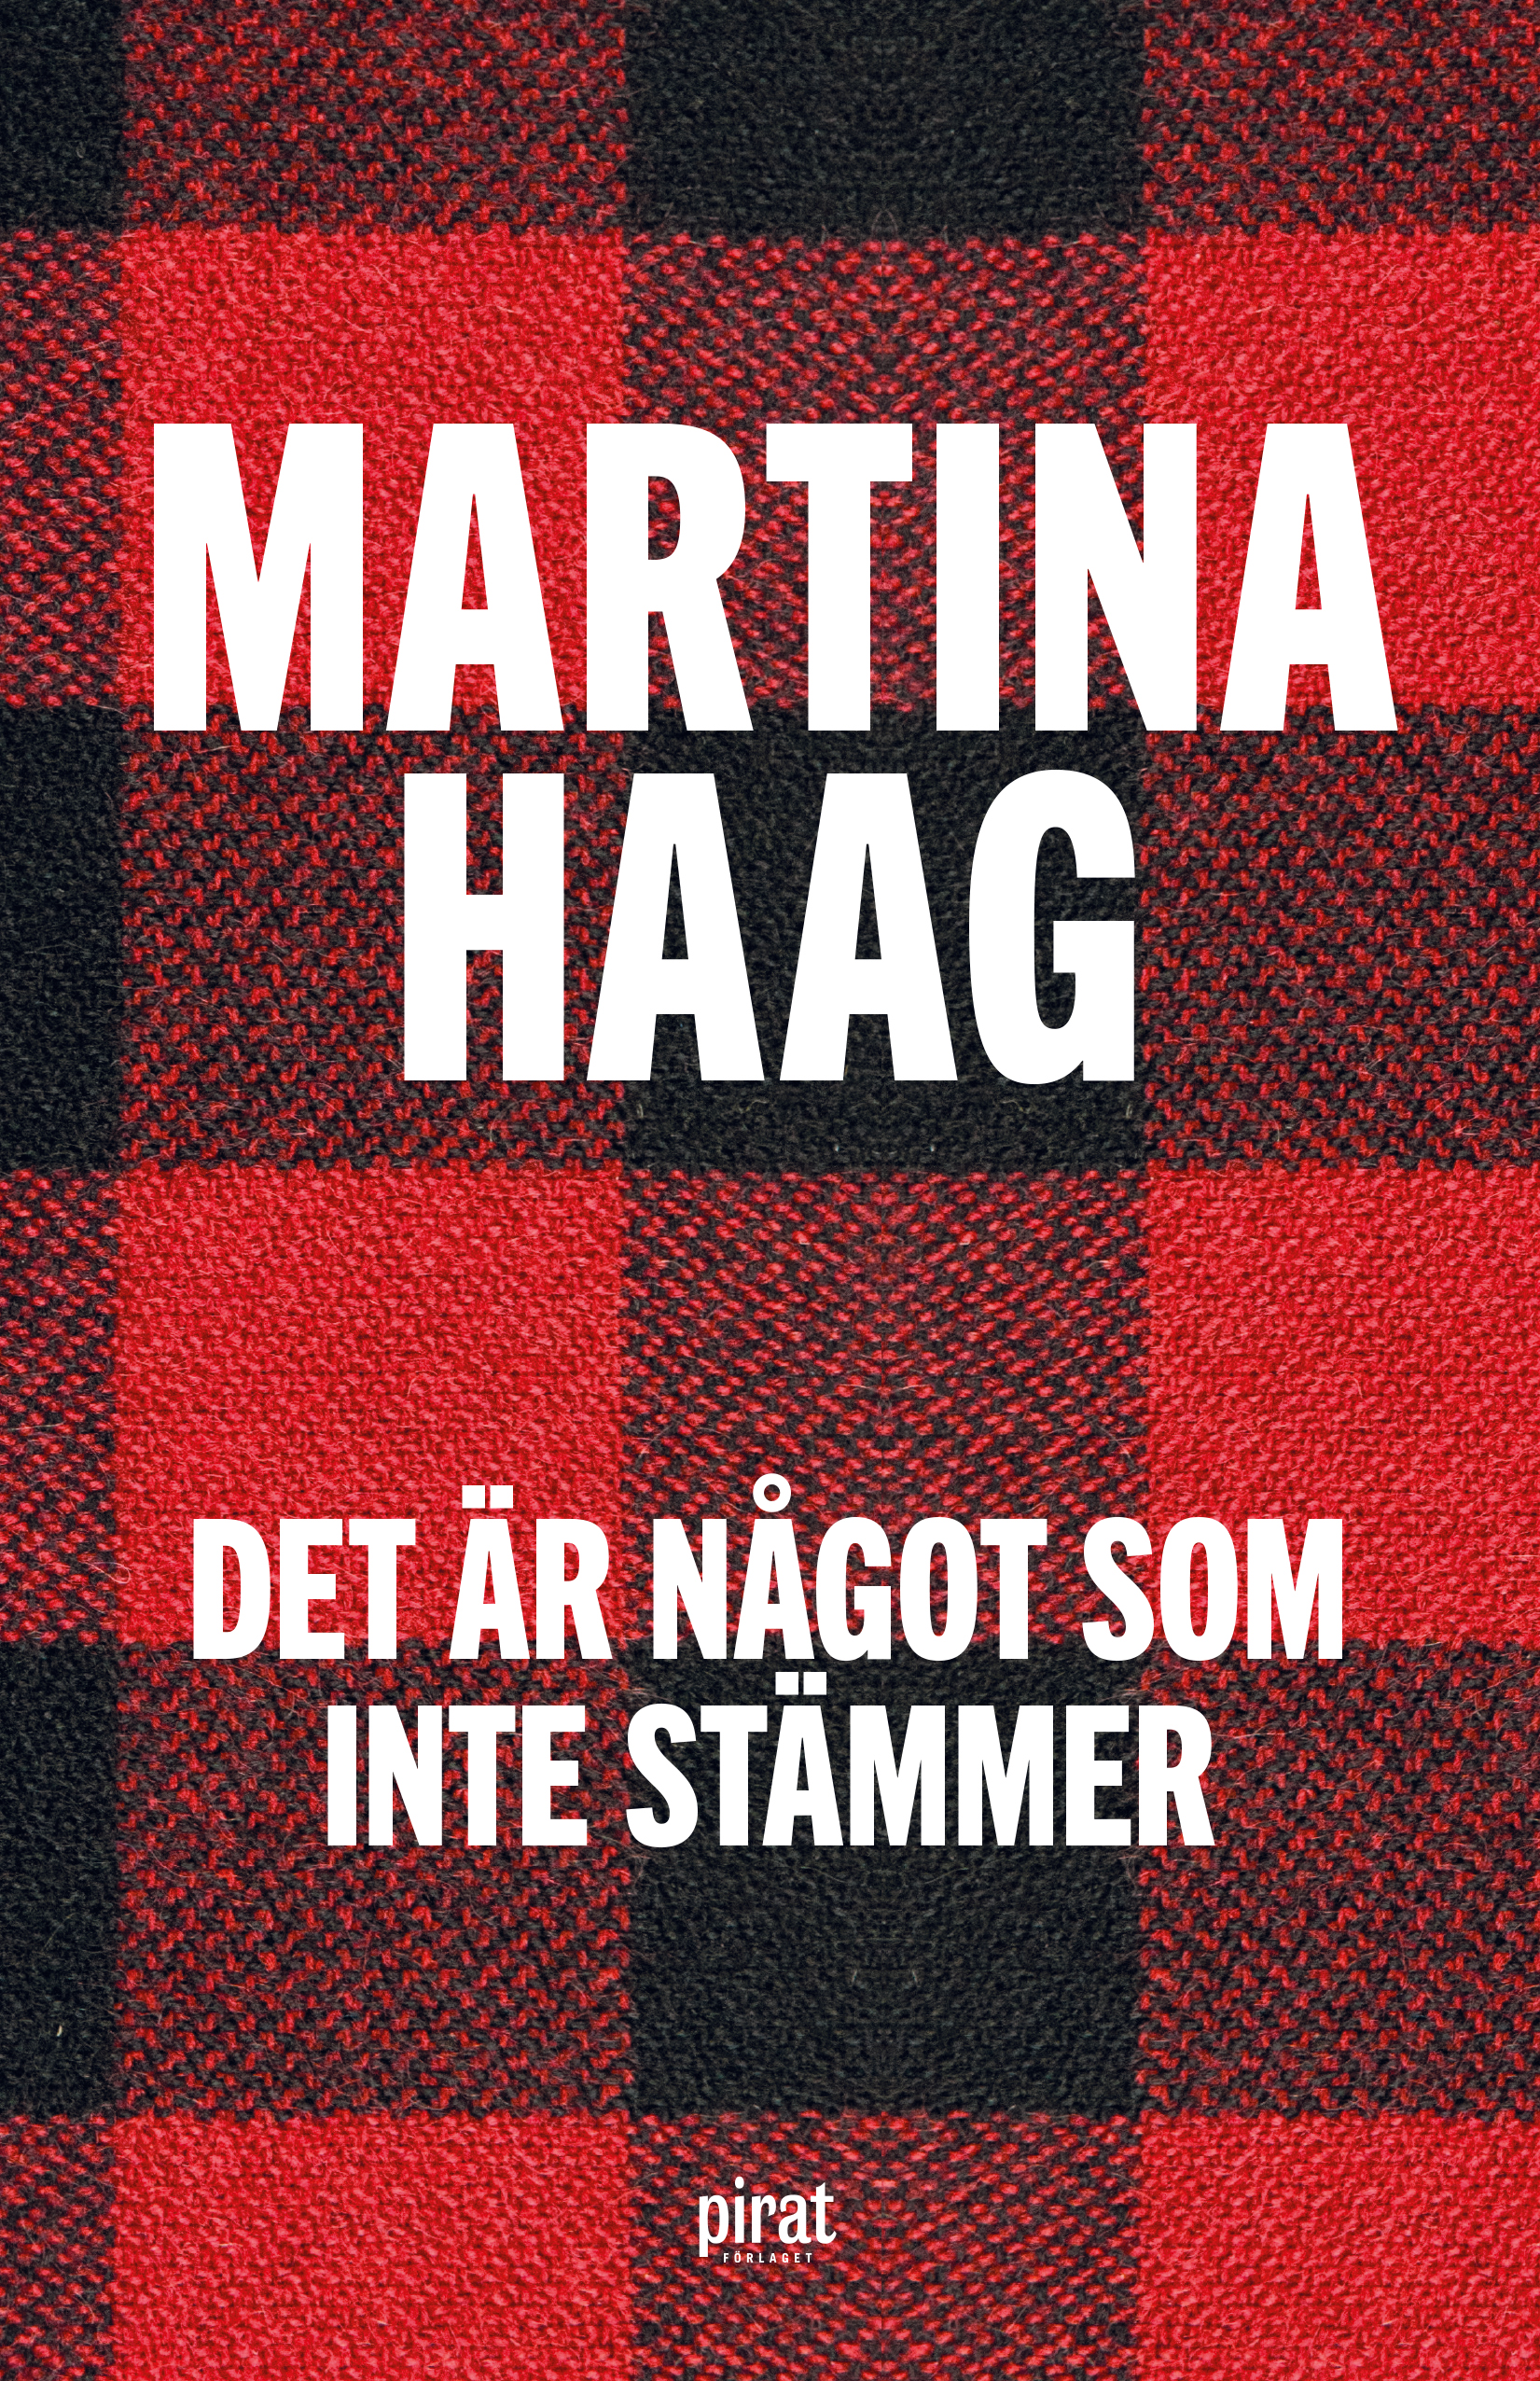 Det är något som inte stämmer Martina Haag